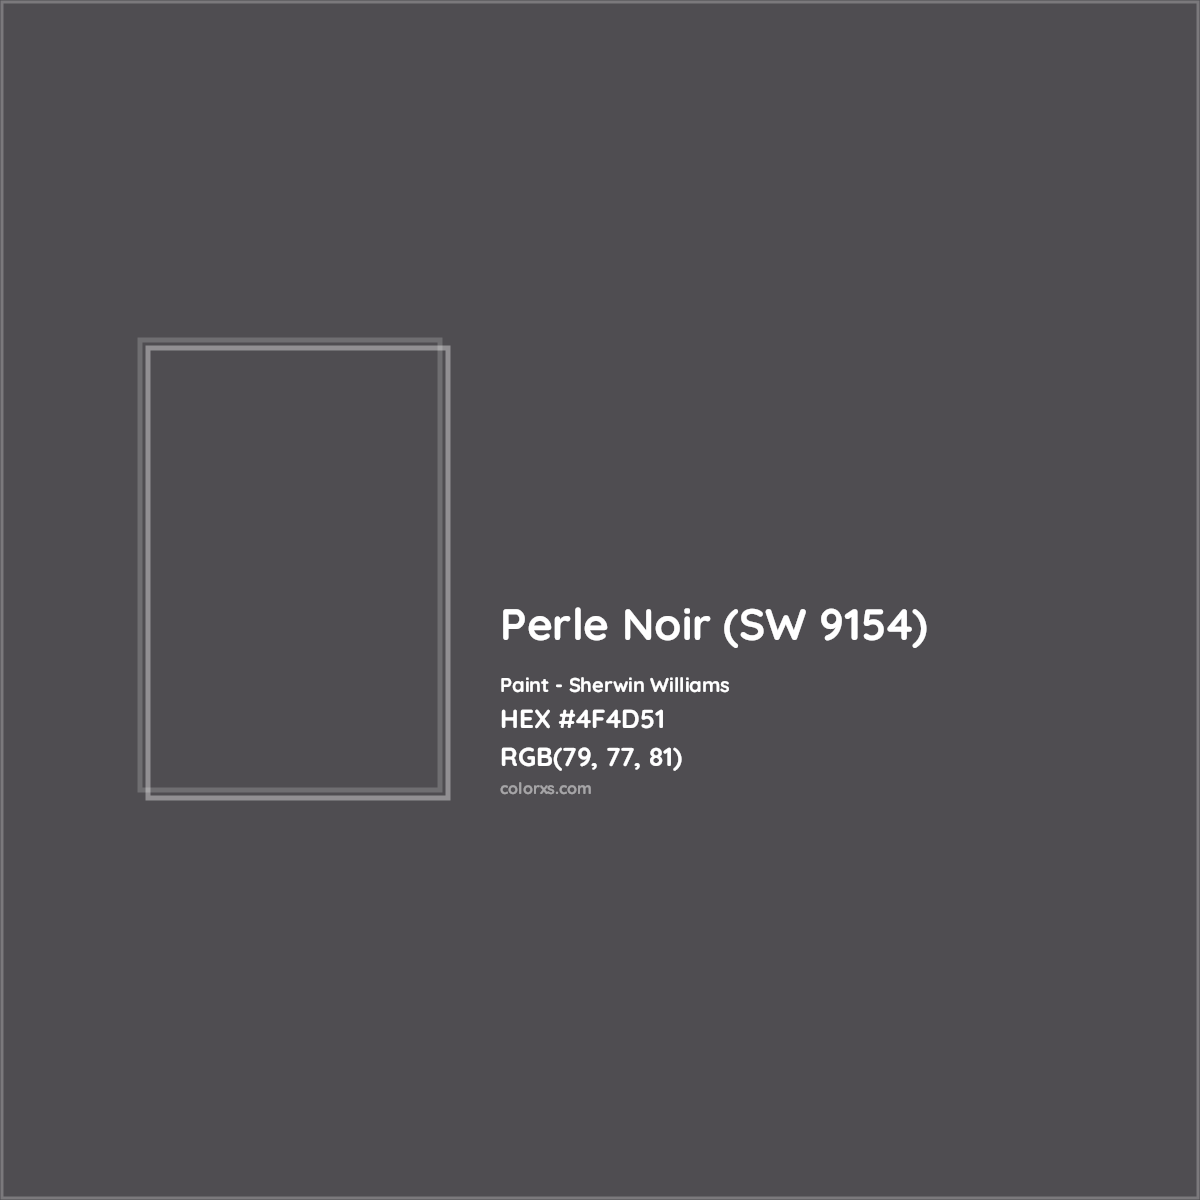 HEX #4F4D51 Perle Noir (SW 9154) Paint Sherwin Williams - Color Code